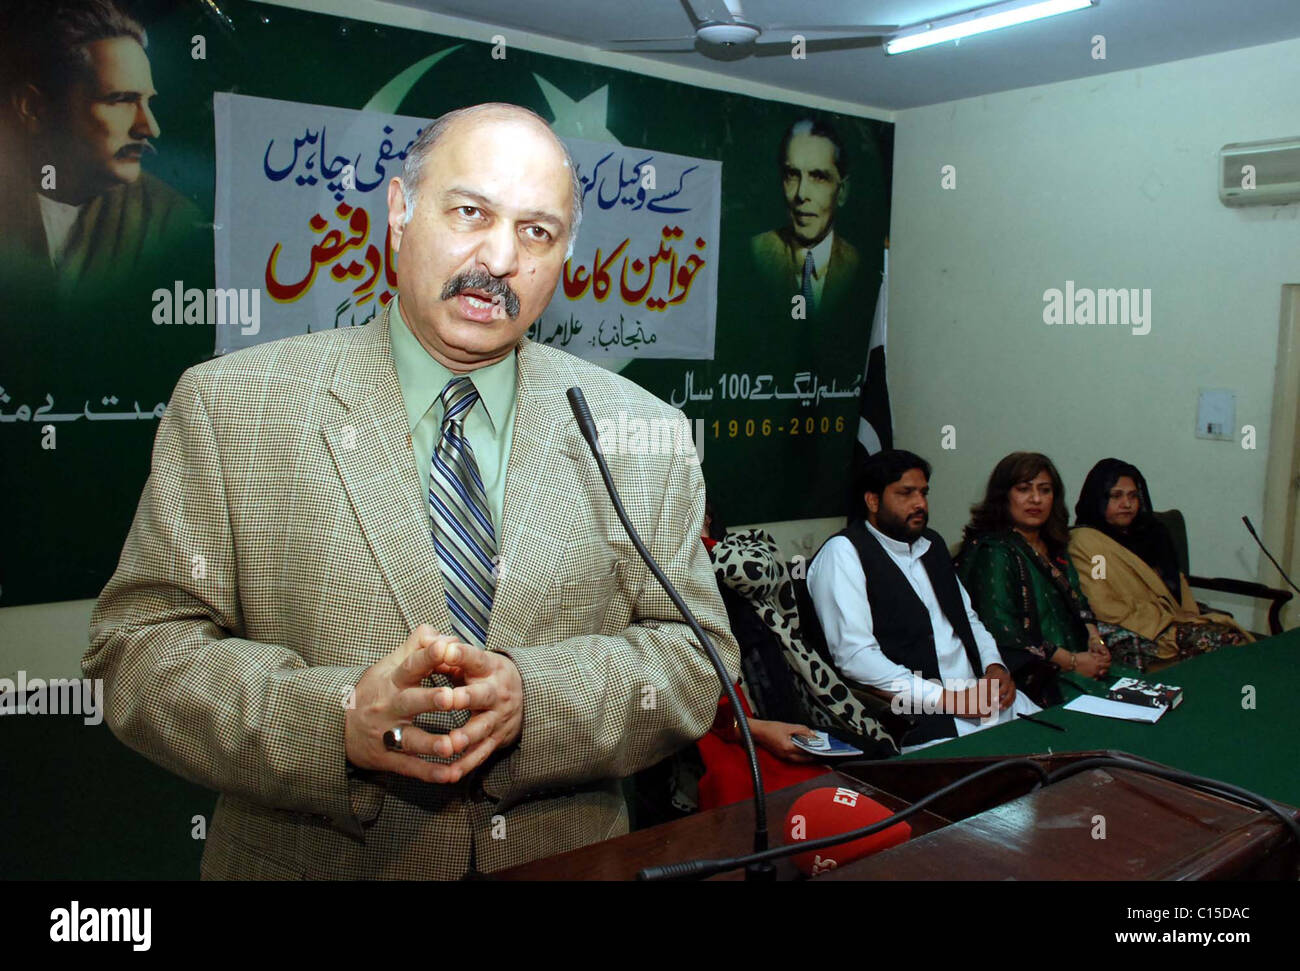 Moslemischer Liga-Q Führer Adressen Mushahid Hussain Syed Seminar anlässlich des "World Womens Day" Stockfoto